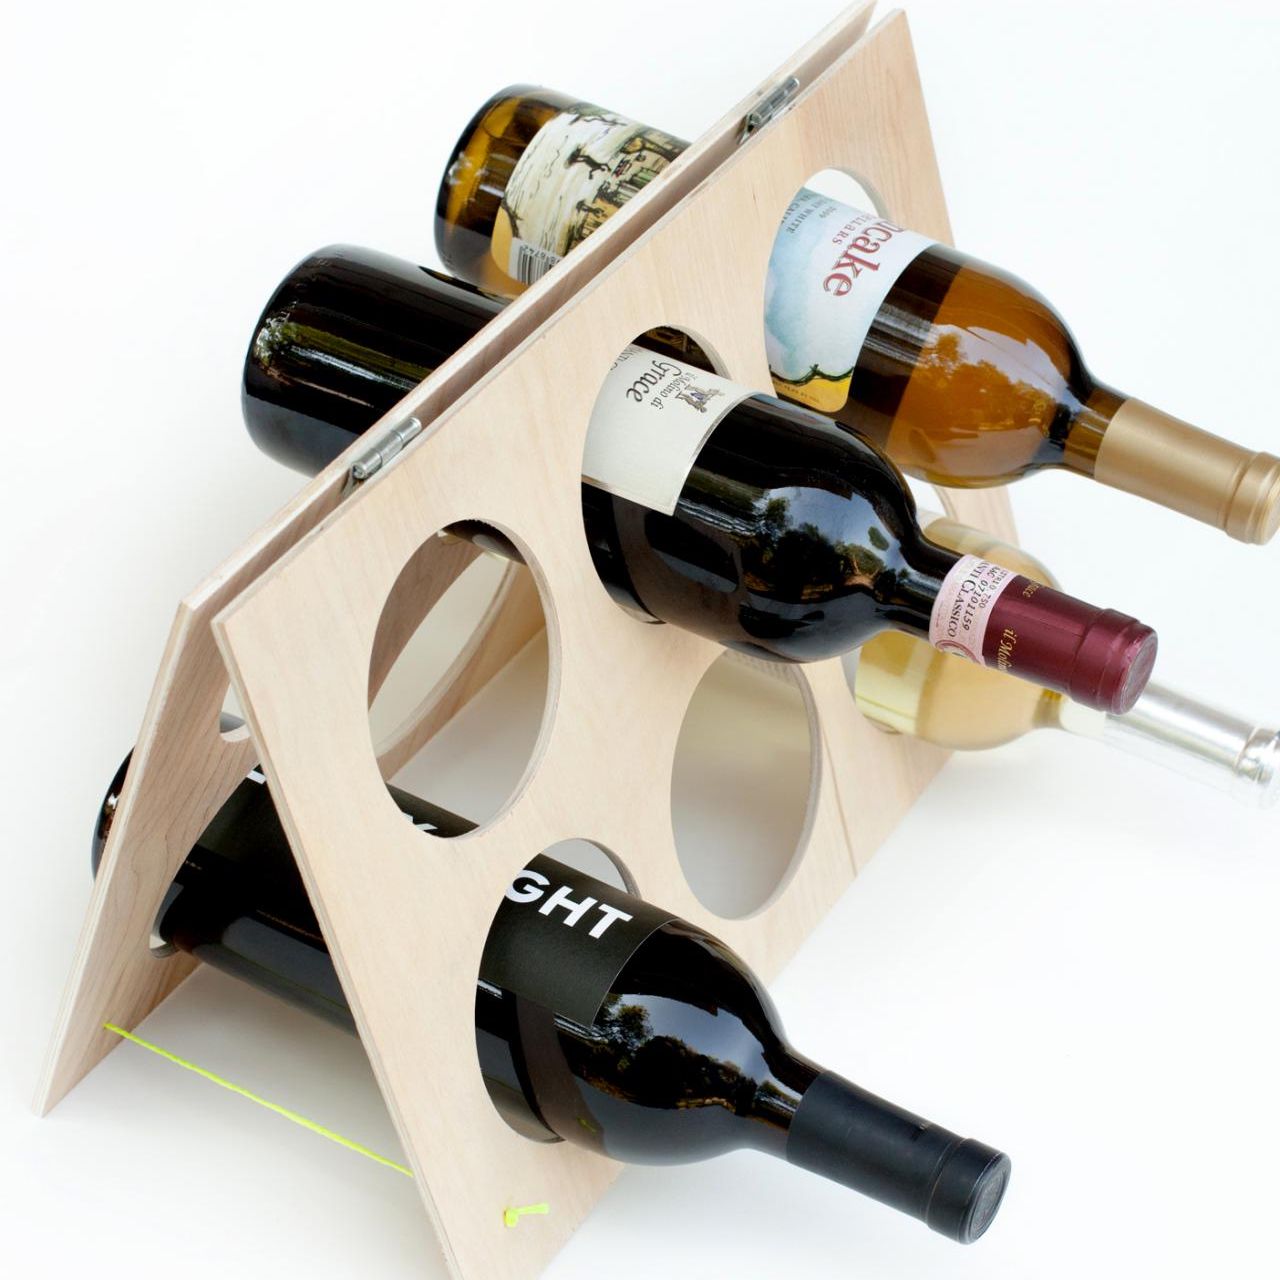 şarap şişesi standı seçenekleri fikirleri